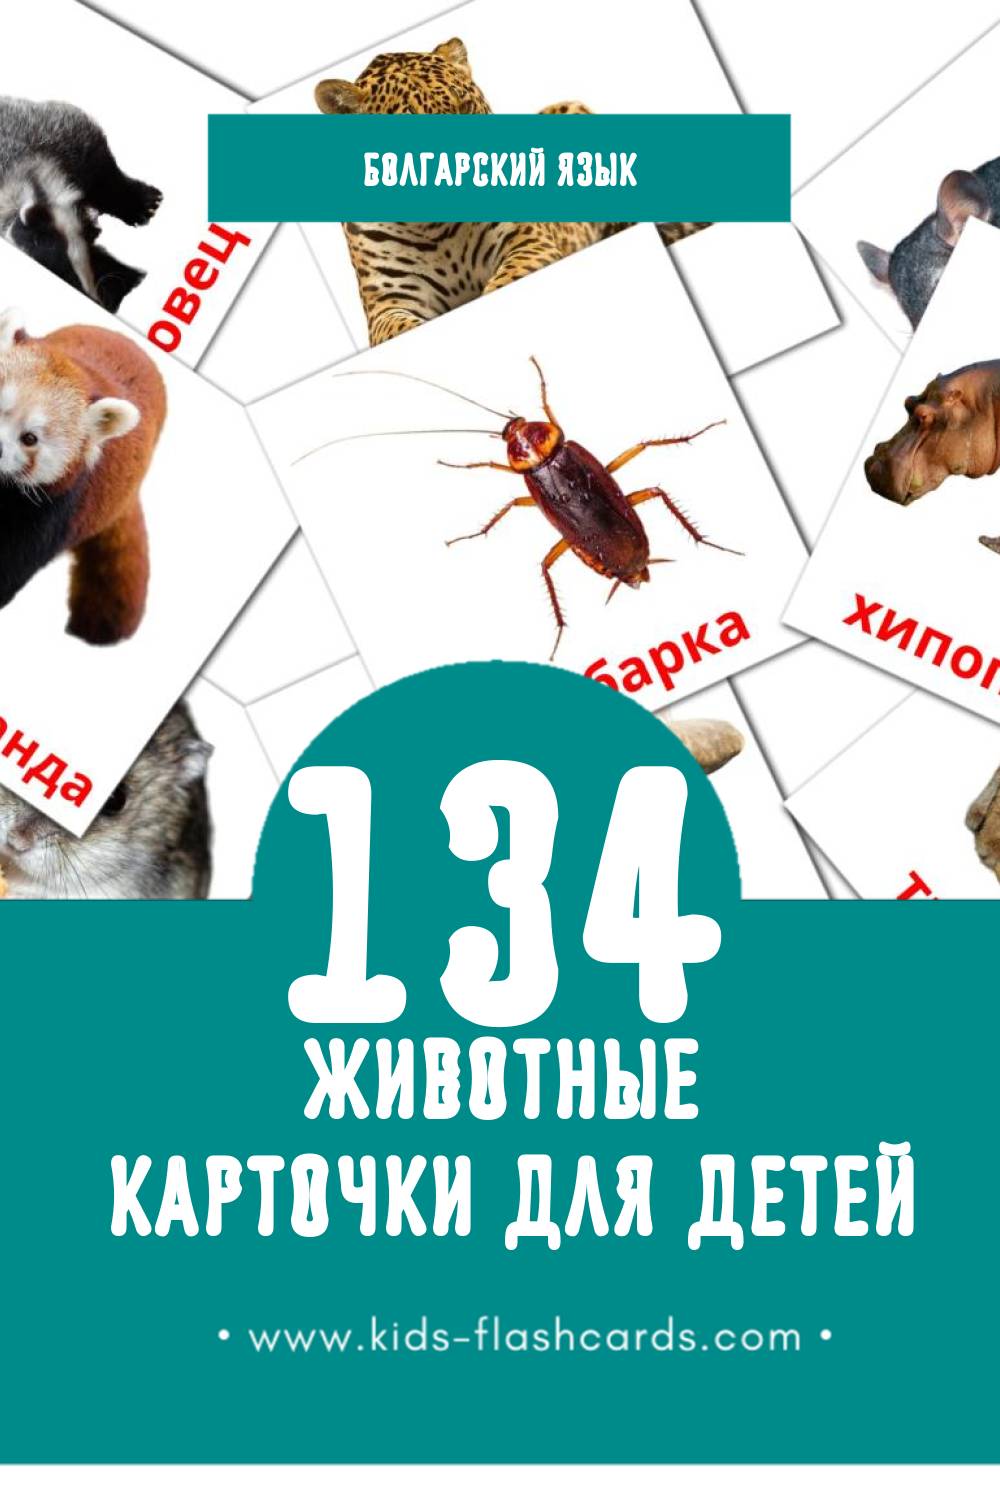 "Животни" - Визуальный Болгарском Словарь для Малышей (134 картинок)